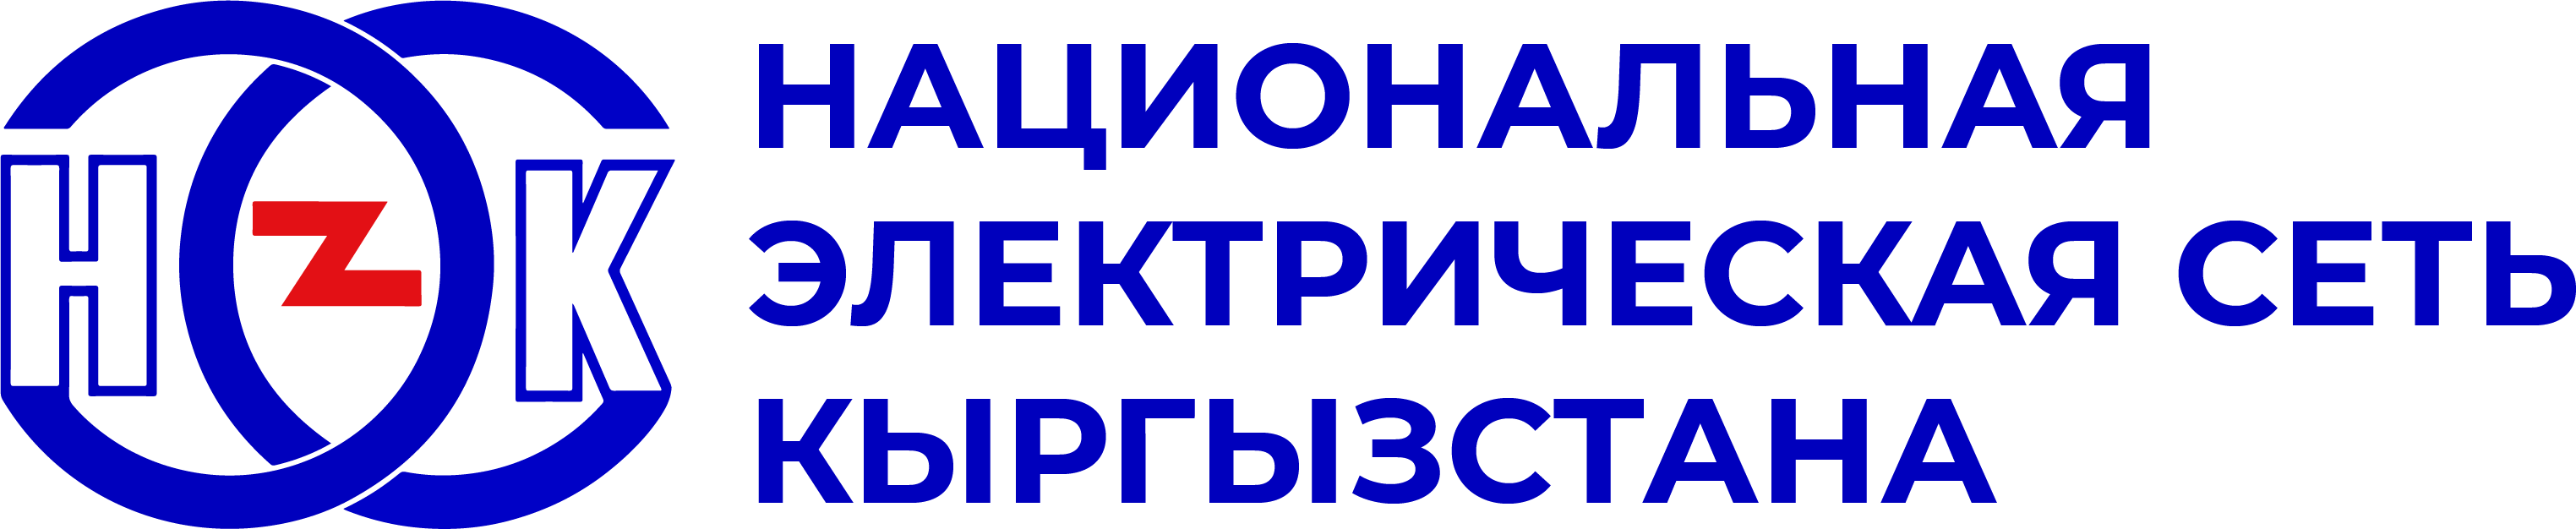 negk logo